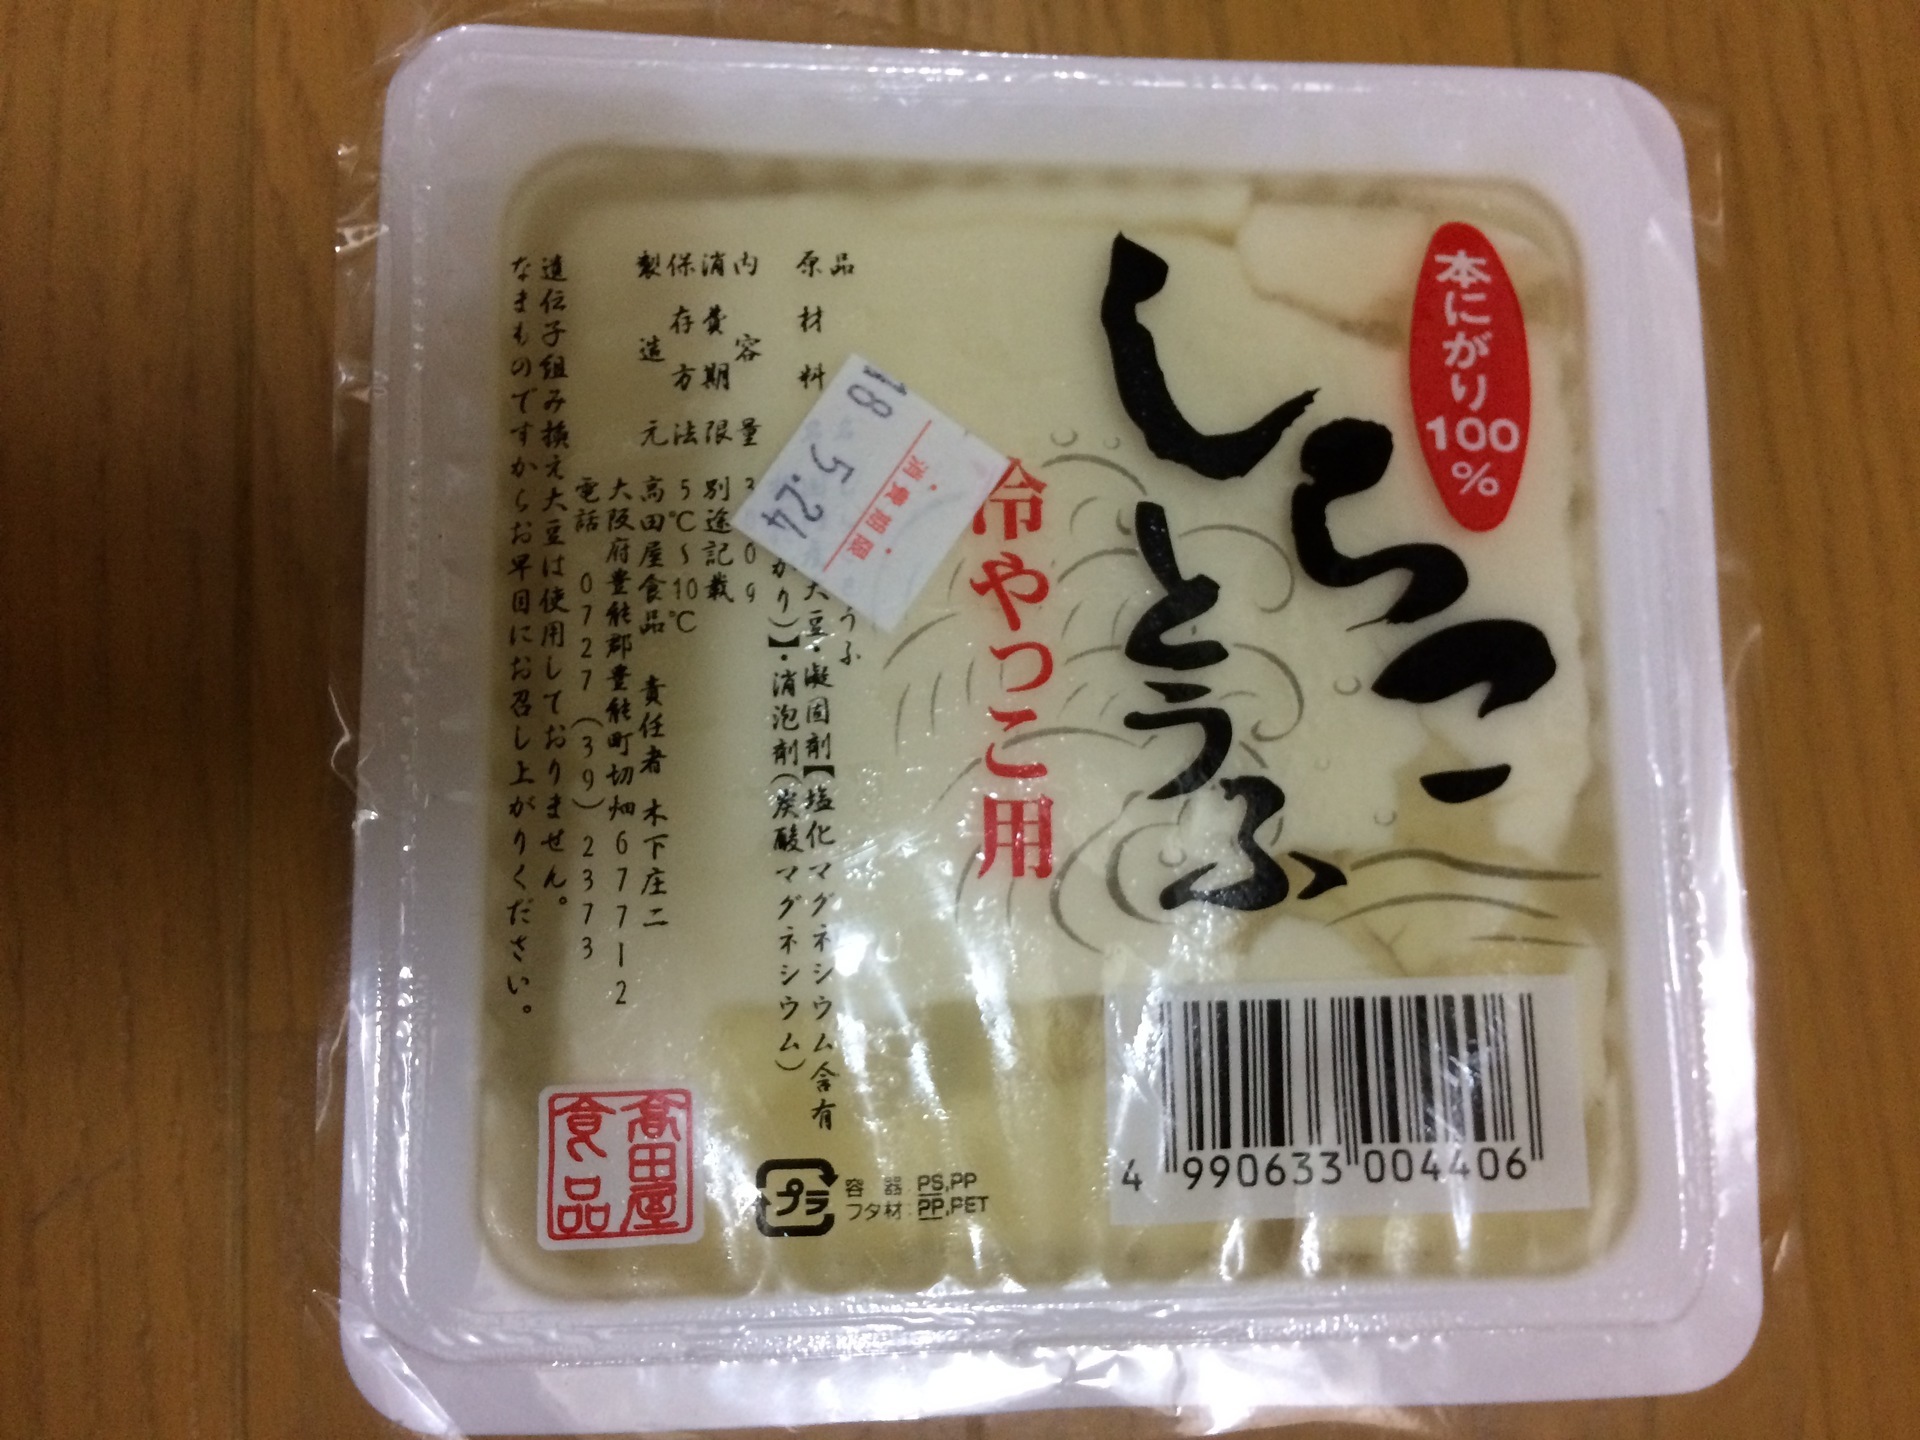 世界一 柔らかい豆腐 他 東京ワタシstyle